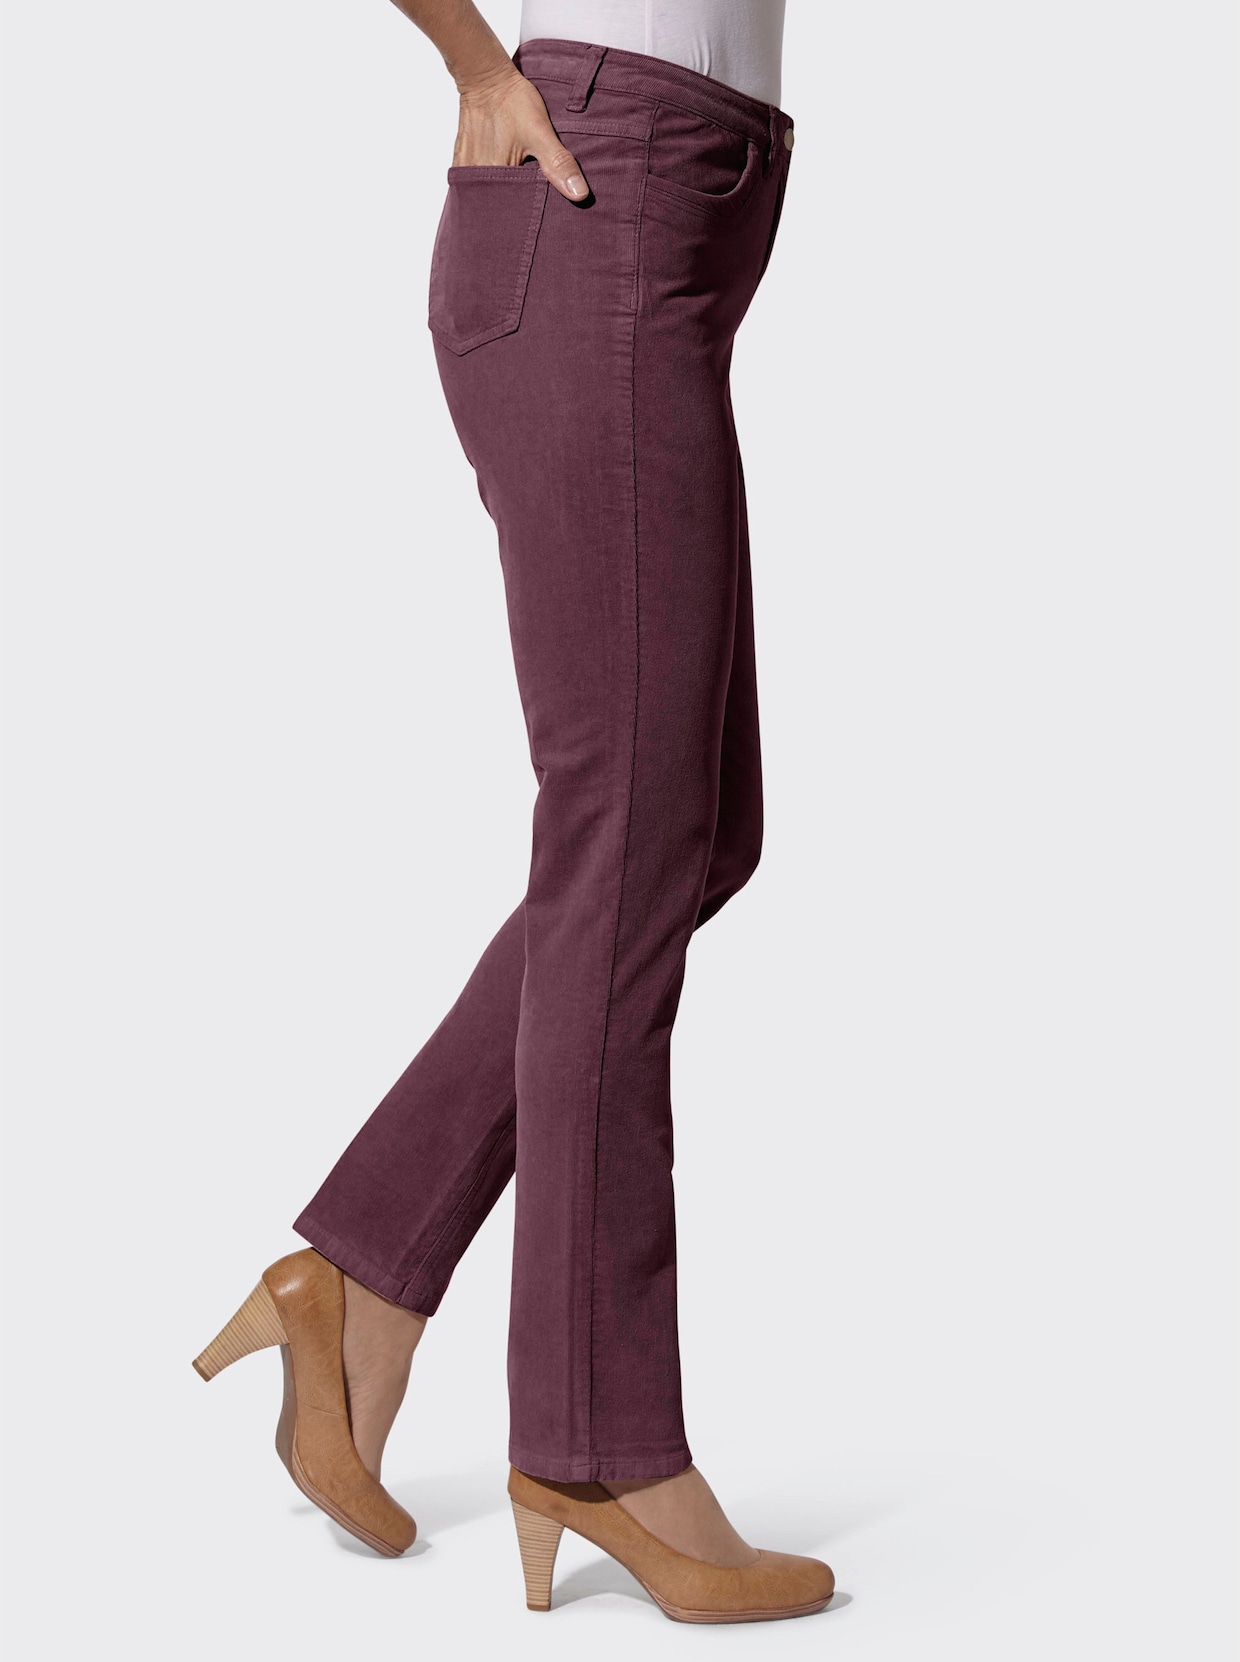 Kordové kalhoty - burgundská